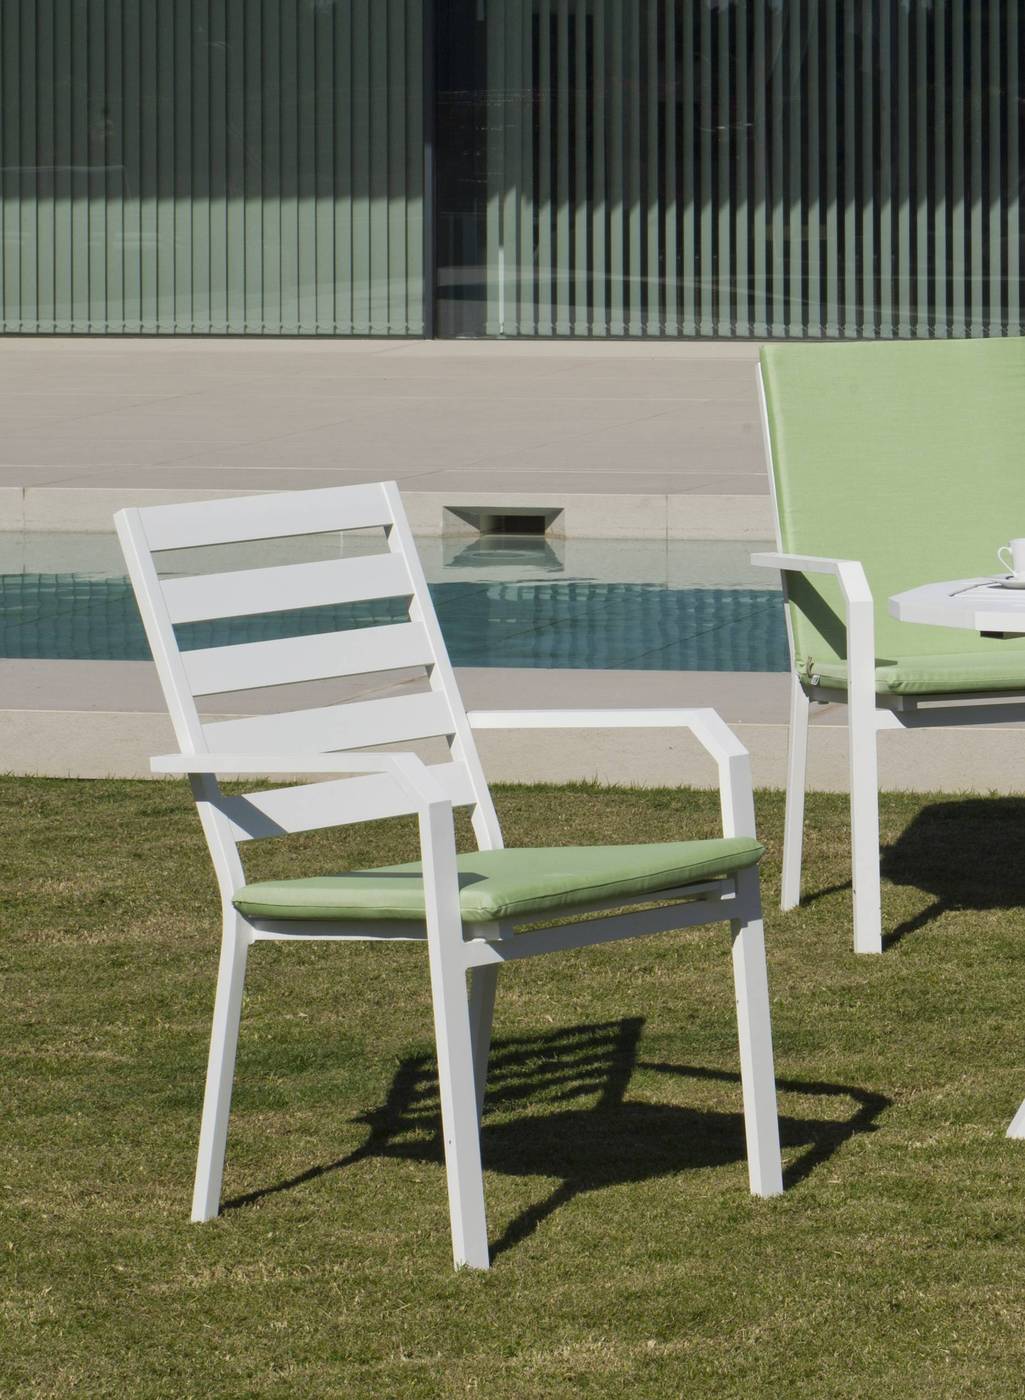 Set Aluminio Baracoa-Caravel 110-4 - Moderno conjunto de aluminio luxe: Mesa de comedor poligonal de 110 cm. + 4 sillones. Disponible en color blanco, antracita, champagne, plata o marrón.